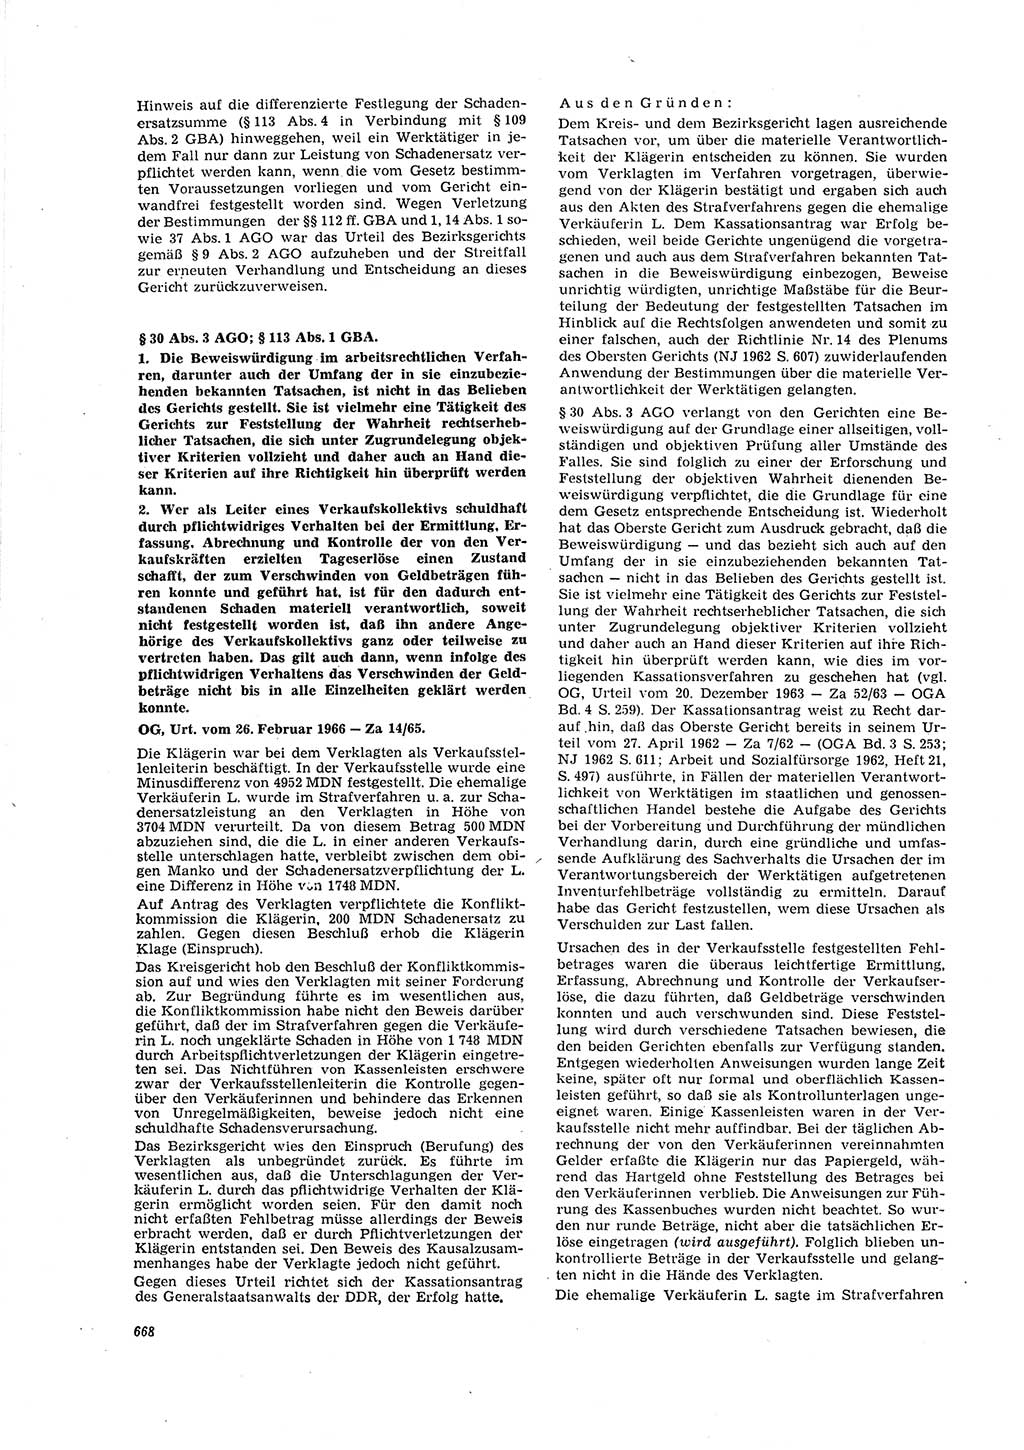 Neue Justiz (NJ), Zeitschrift für Recht und Rechtswissenschaft [Deutsche Demokratische Republik (DDR)], 20. Jahrgang 1966, Seite 668 (NJ DDR 1966, S. 668)